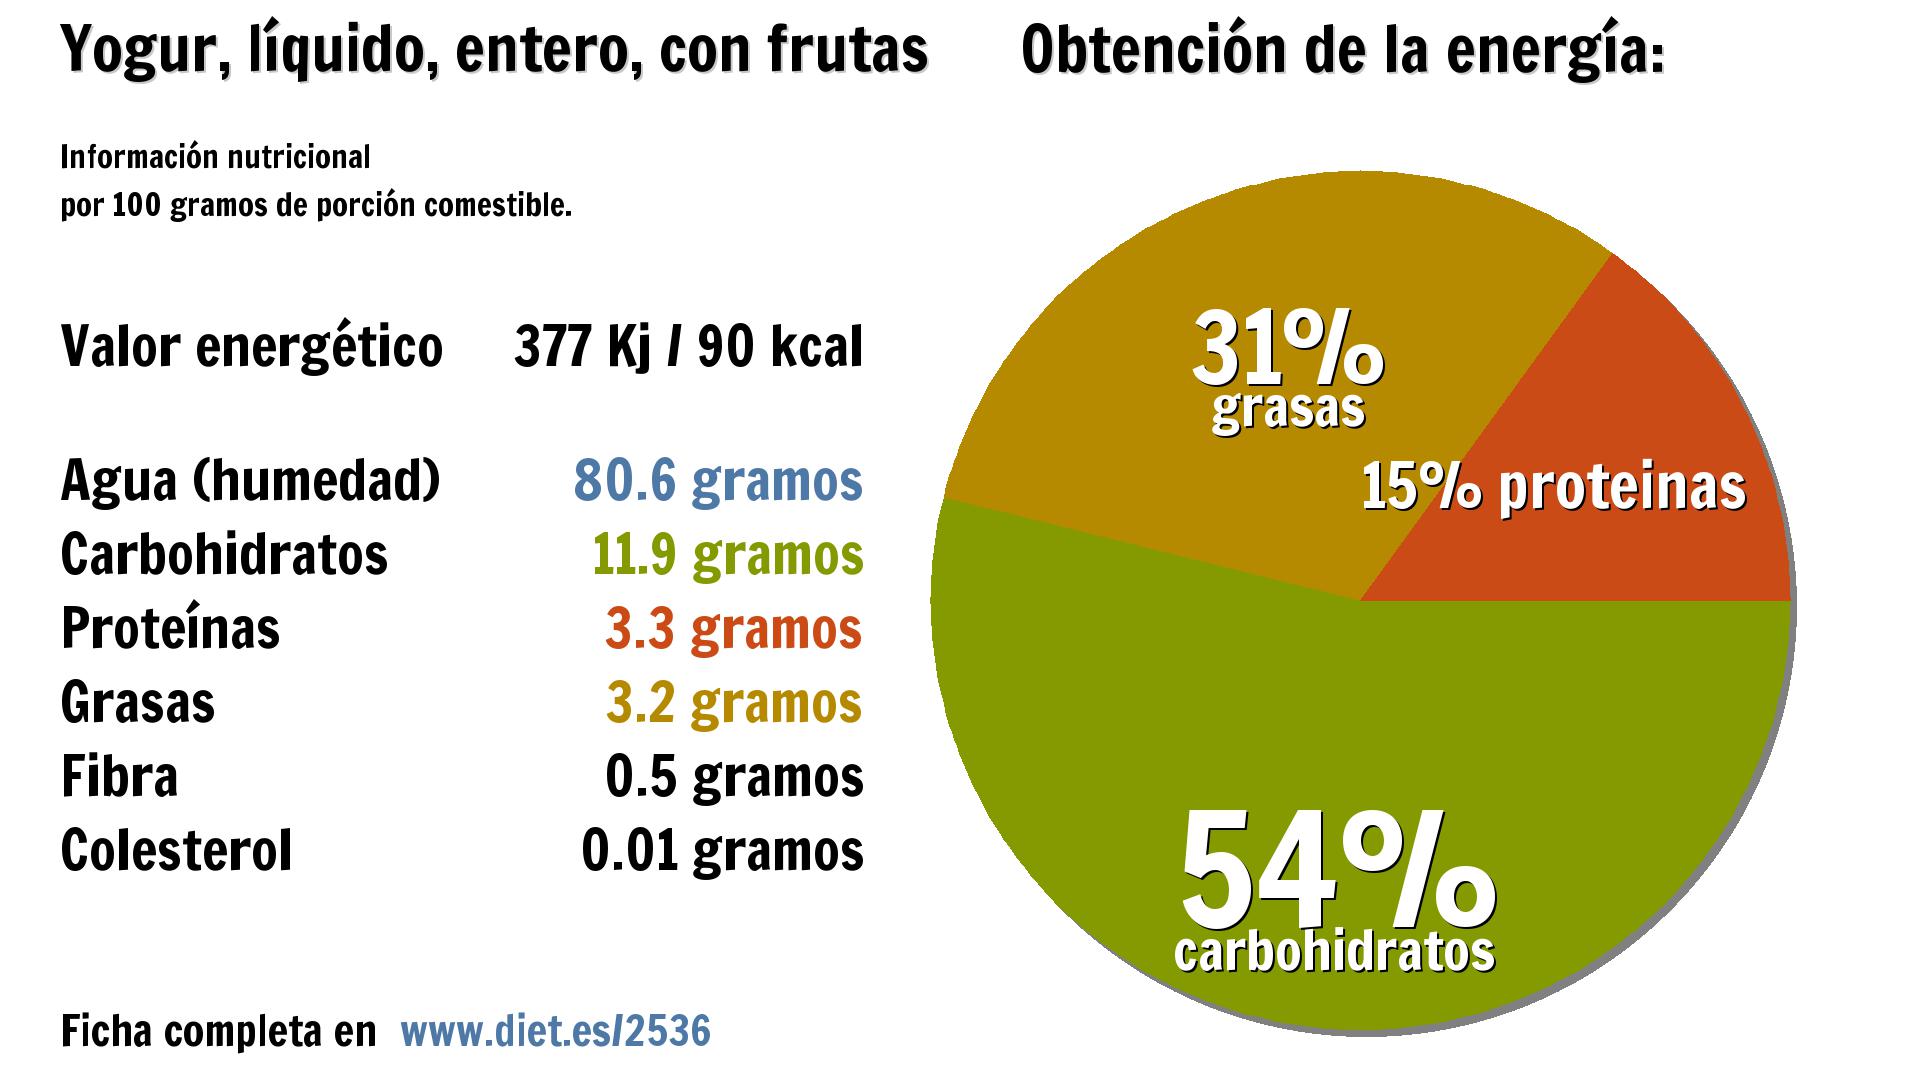 Yogur, líquido, entero, con frutas: energía 377 Kj, agua 81 g., carbohidratos 12 g., proteínas 3 g., grasas 3 g. y fibra 1 g.